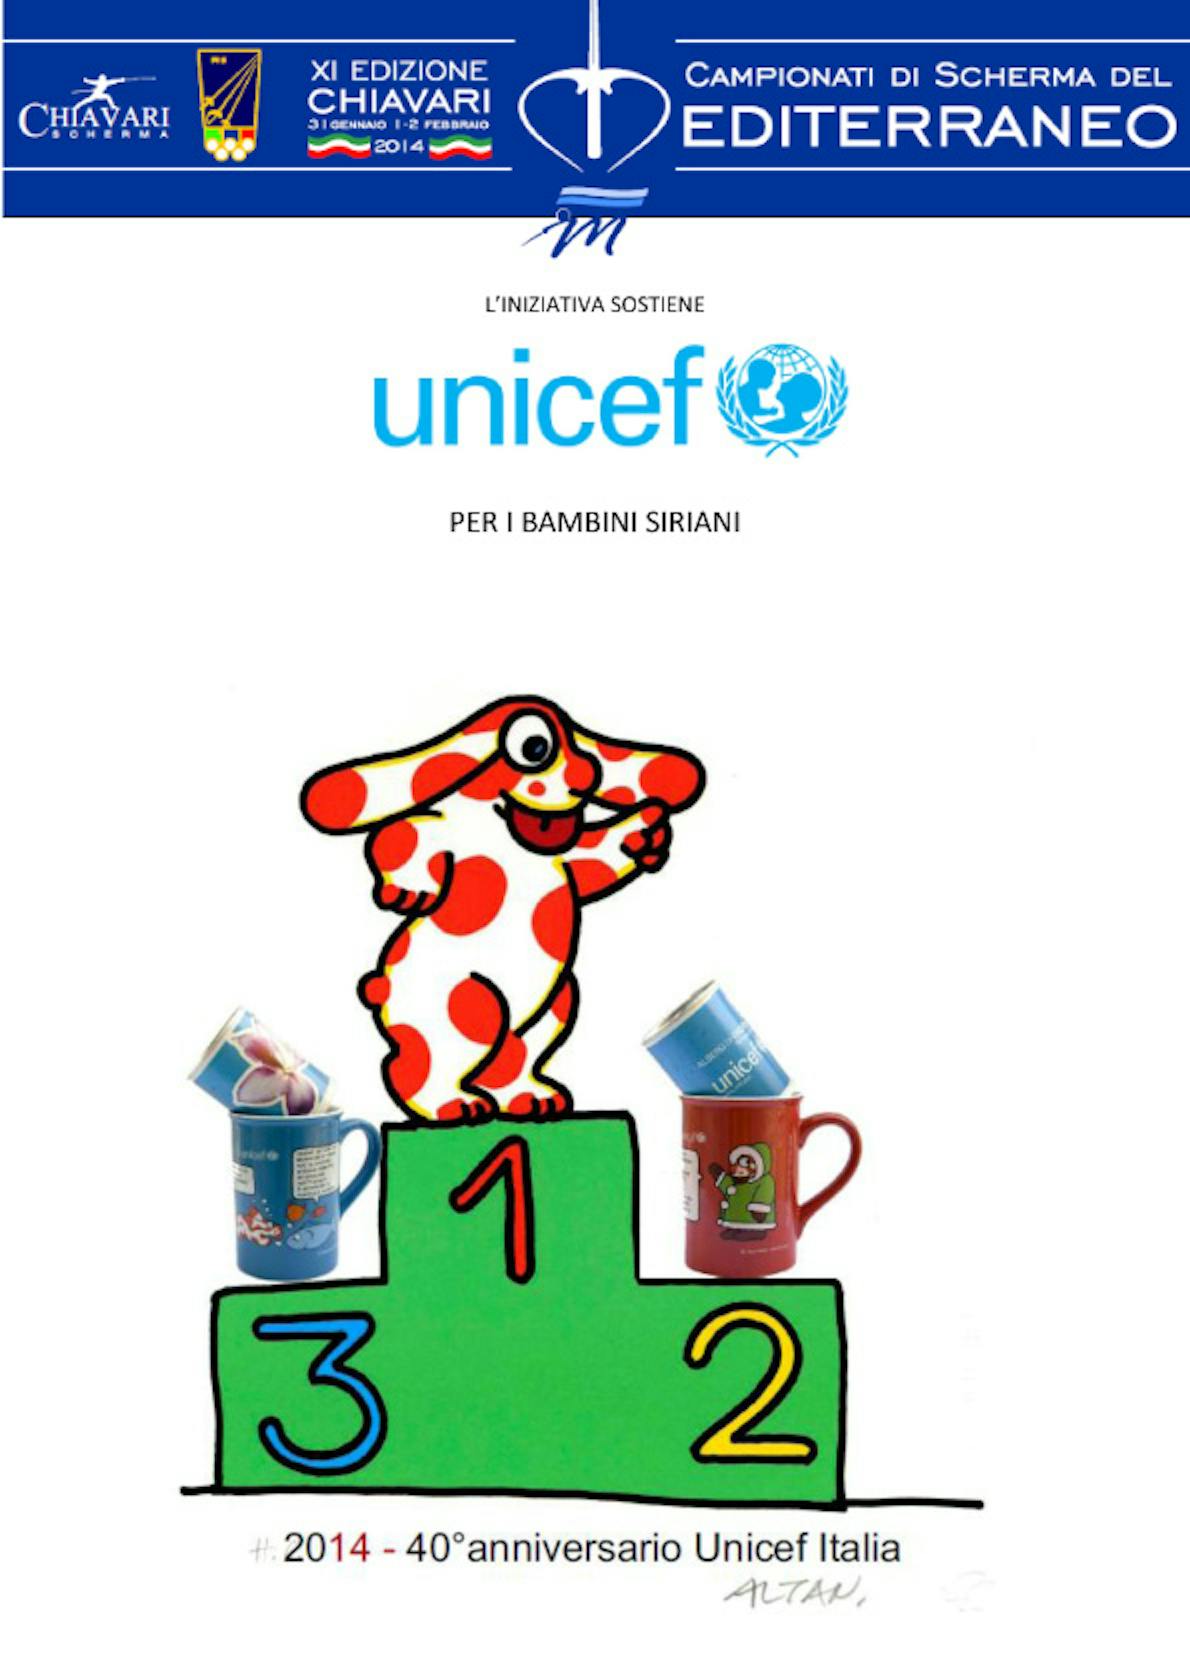 Chiavari: i Campionati del Mediterraneo di Scherma per l'UNICEF